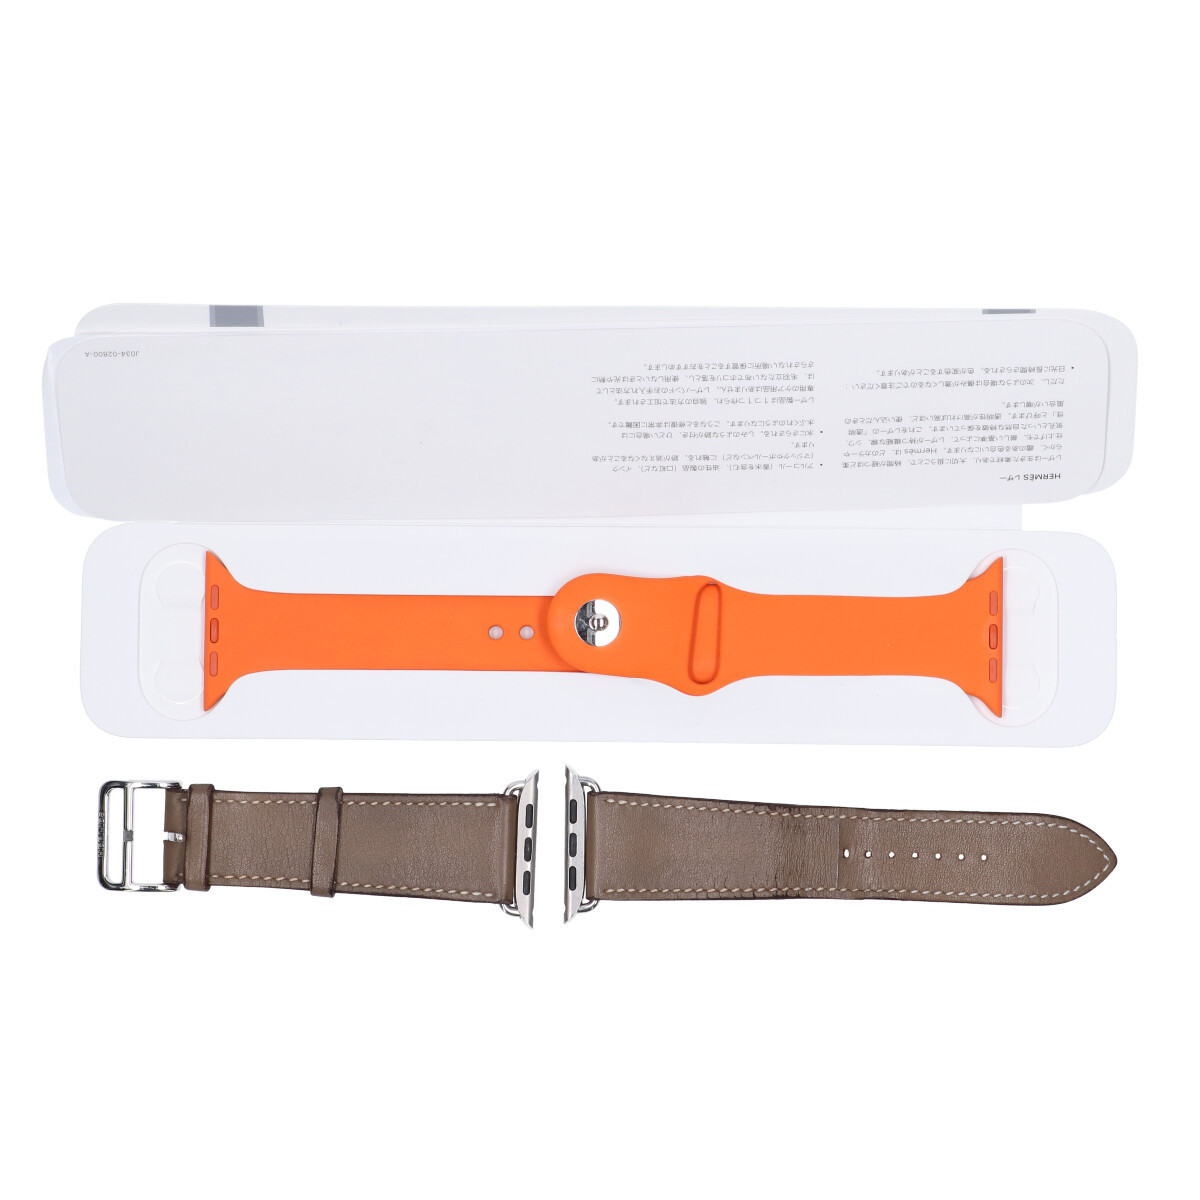 [1 jpy ]HERMES Apple Watch MJ493J/A Series6 44mm GPS+Cellular model simple toe ru leather strap smart watch 